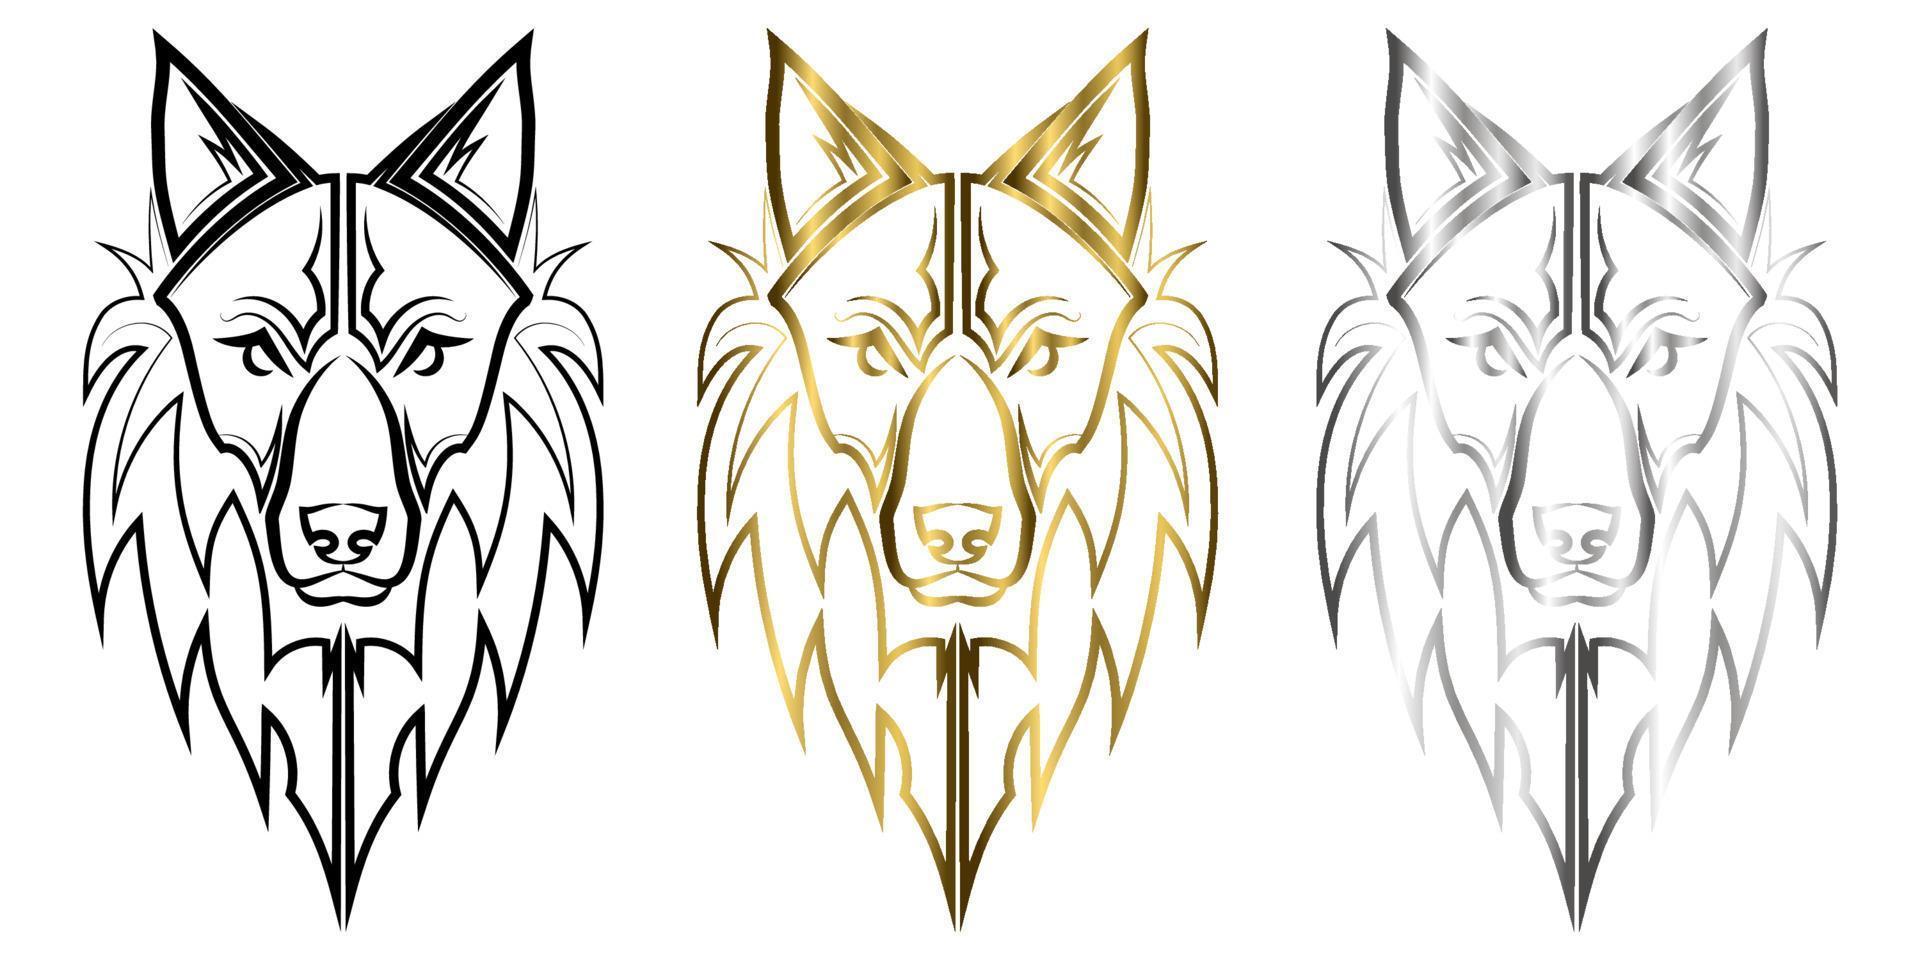 drie kleuren zwart goud en zilver lijntekeningen van wolf hoofd goed gebruik voor symbool mascotte pictogram avatar tattoo t-shirt ontwerp logo of elk ontwerp dat u wilt vector